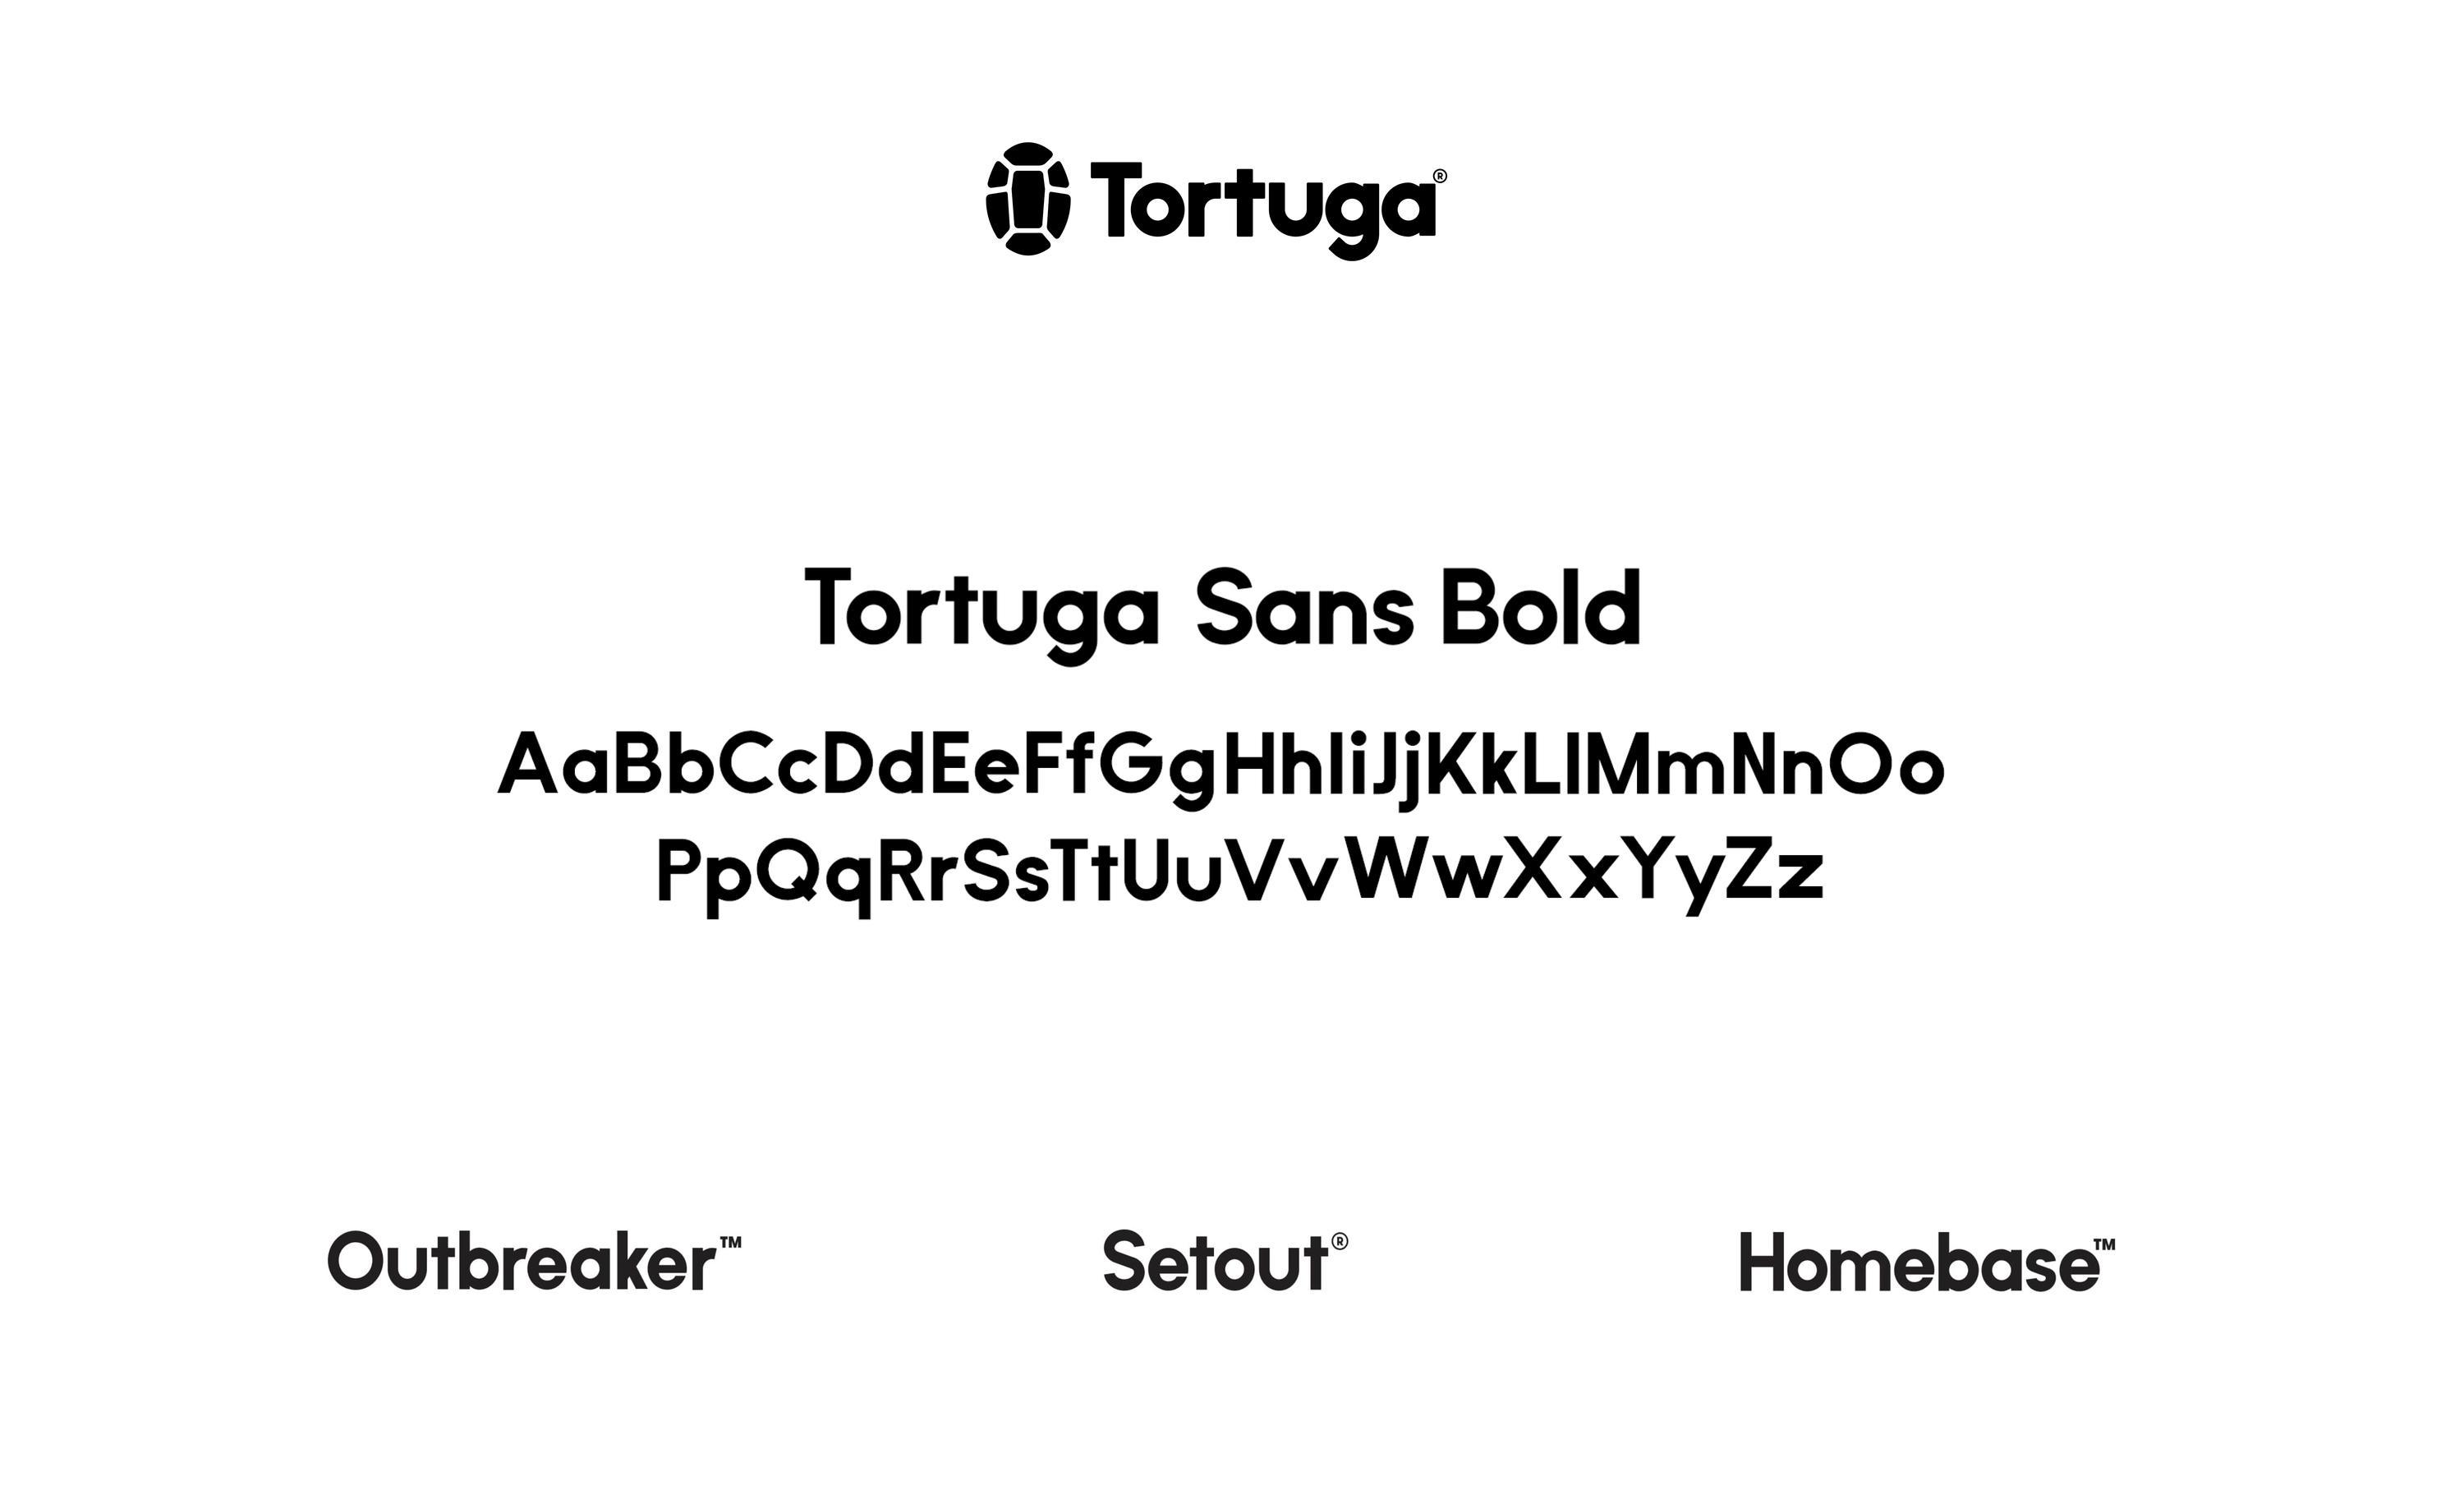 Tortuga Image